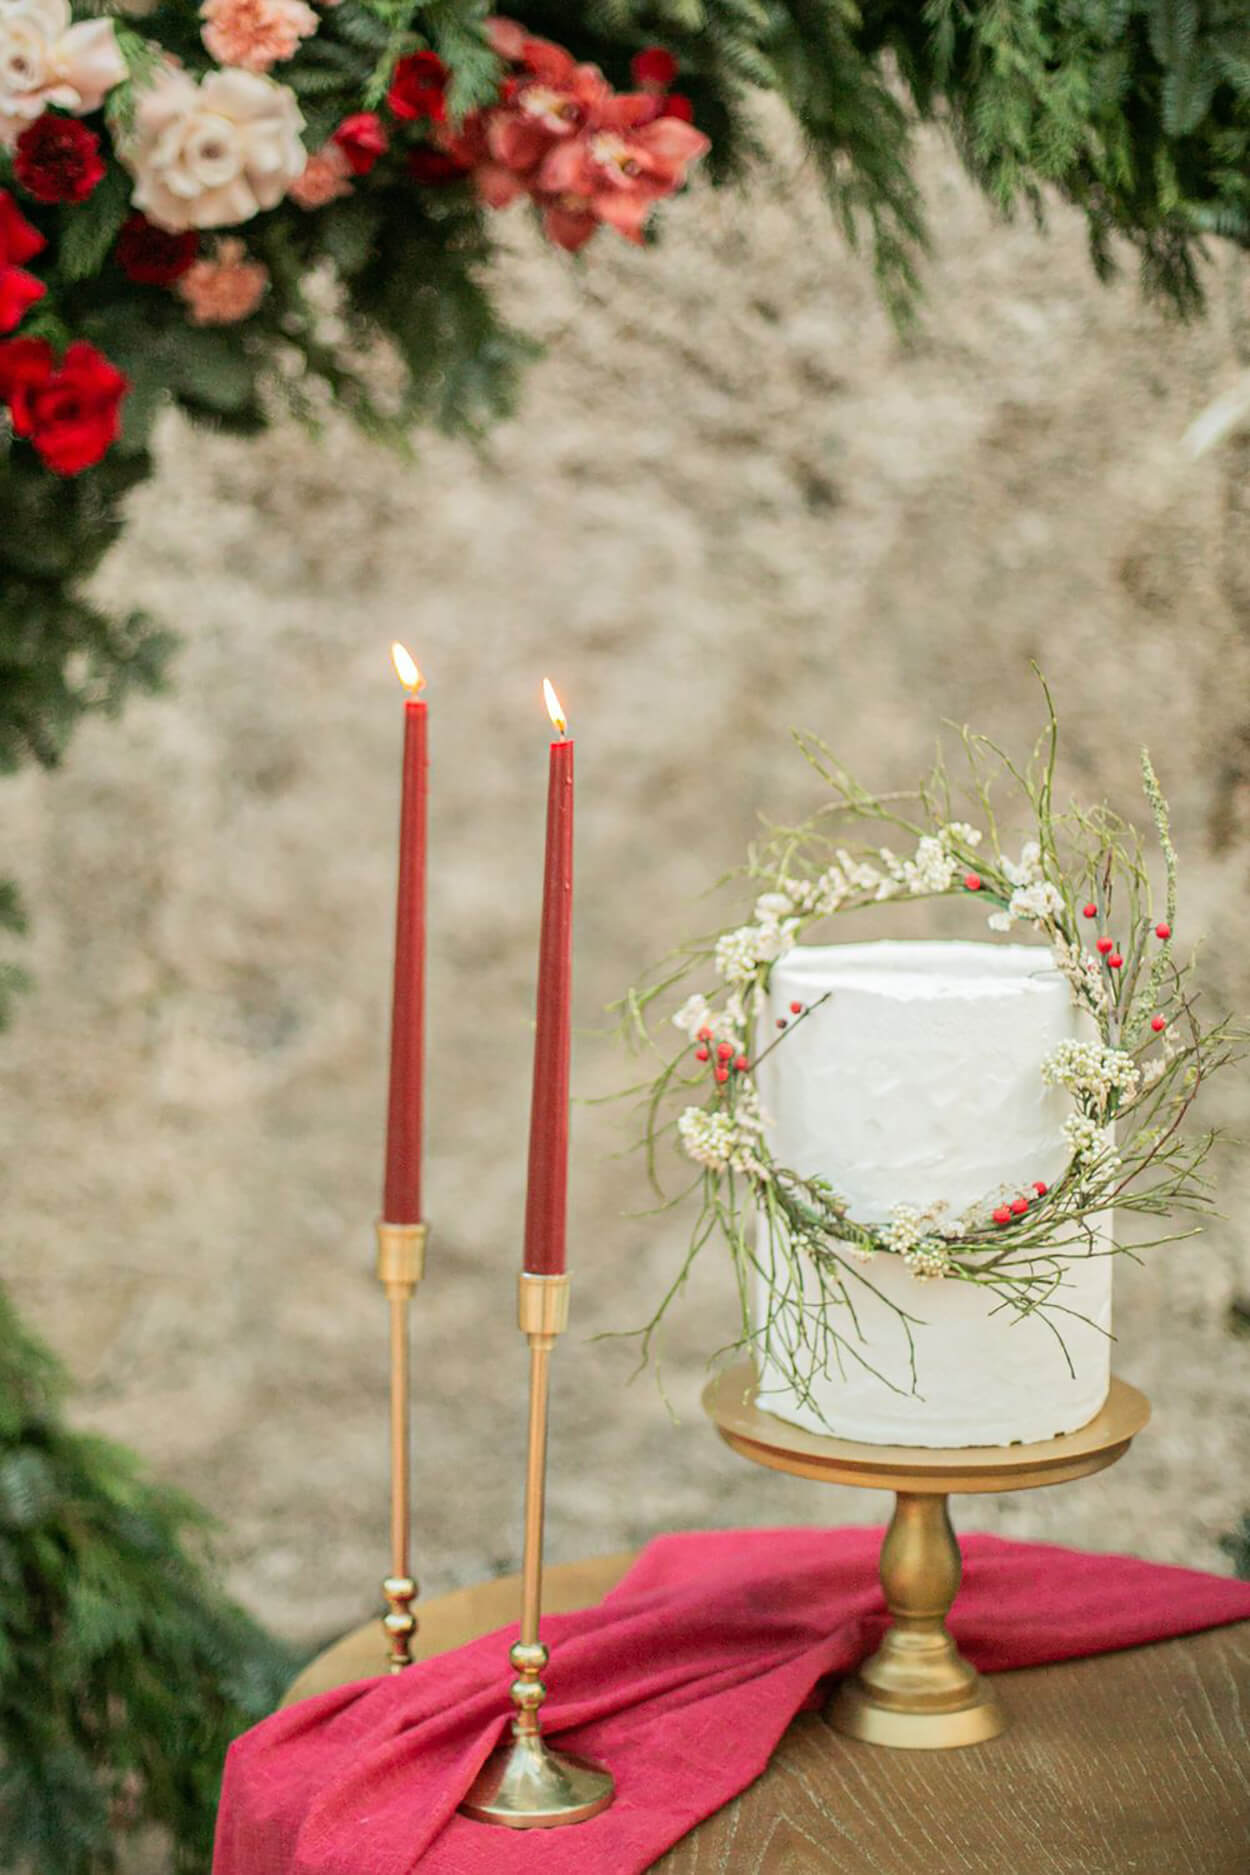 Bolo de casamento branco com dois andares com coroa de flores e castiçais com velas vermelhas